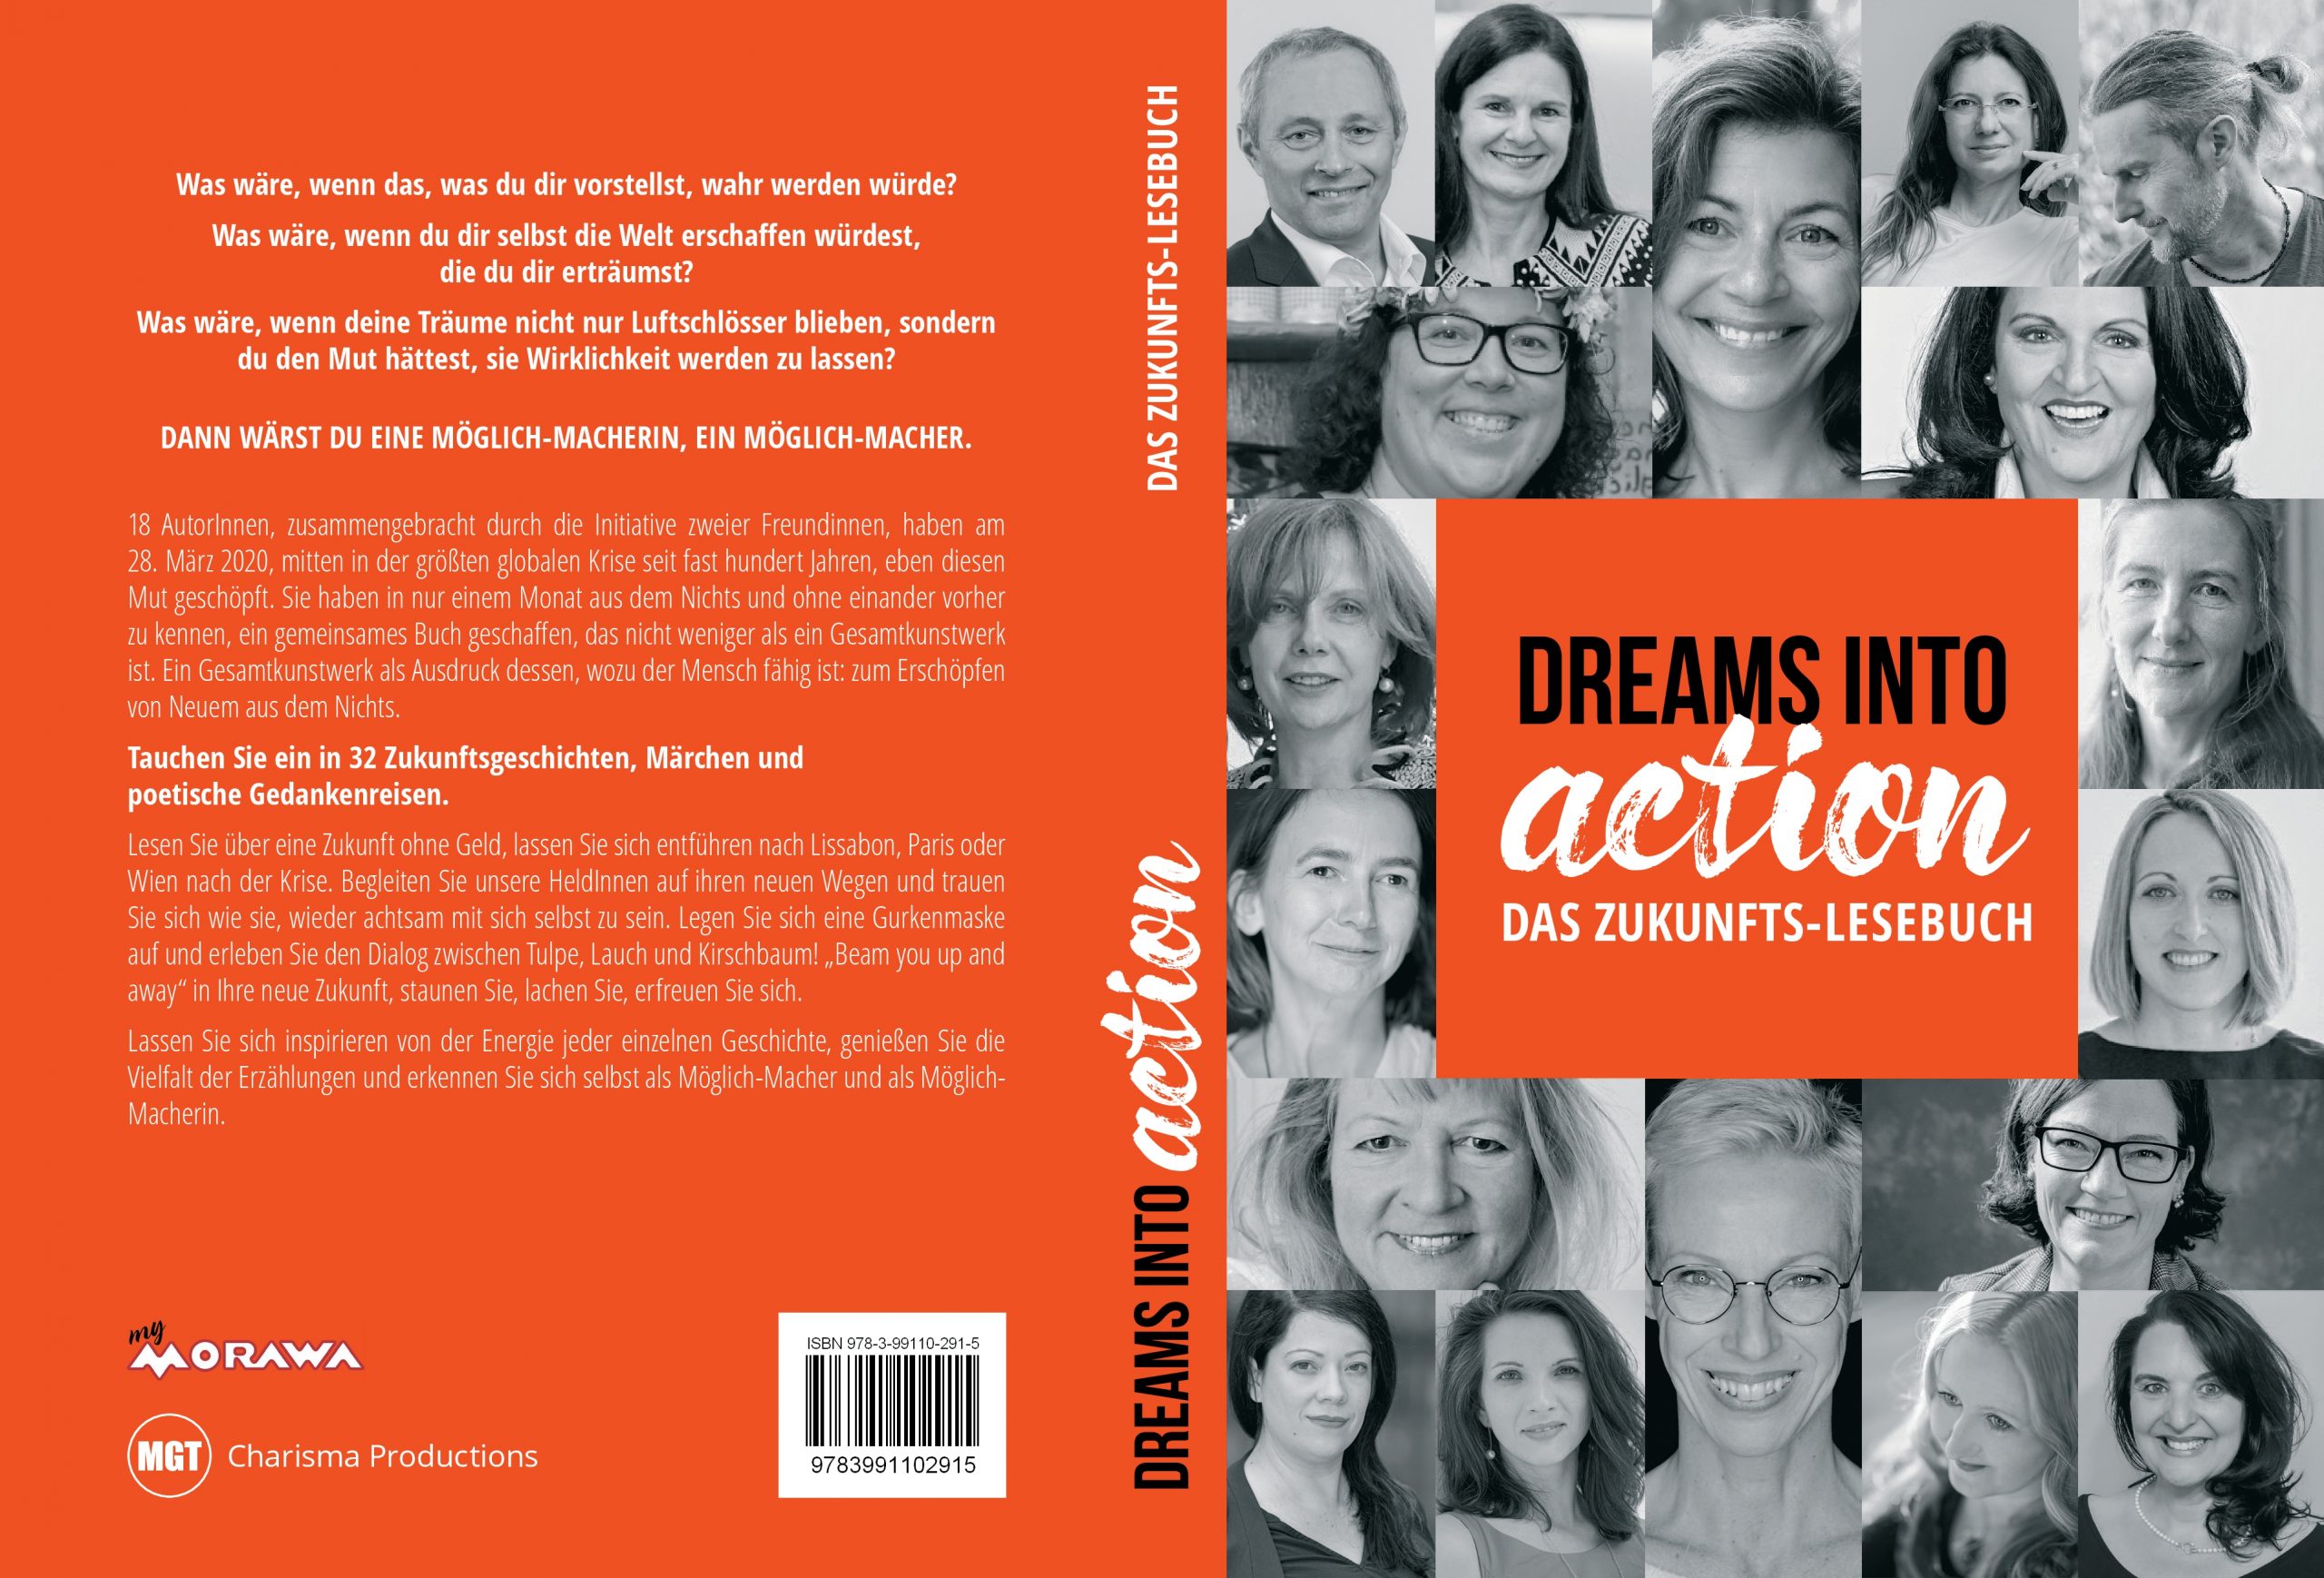 Dreams Into Action: das Zukunftslesebuch